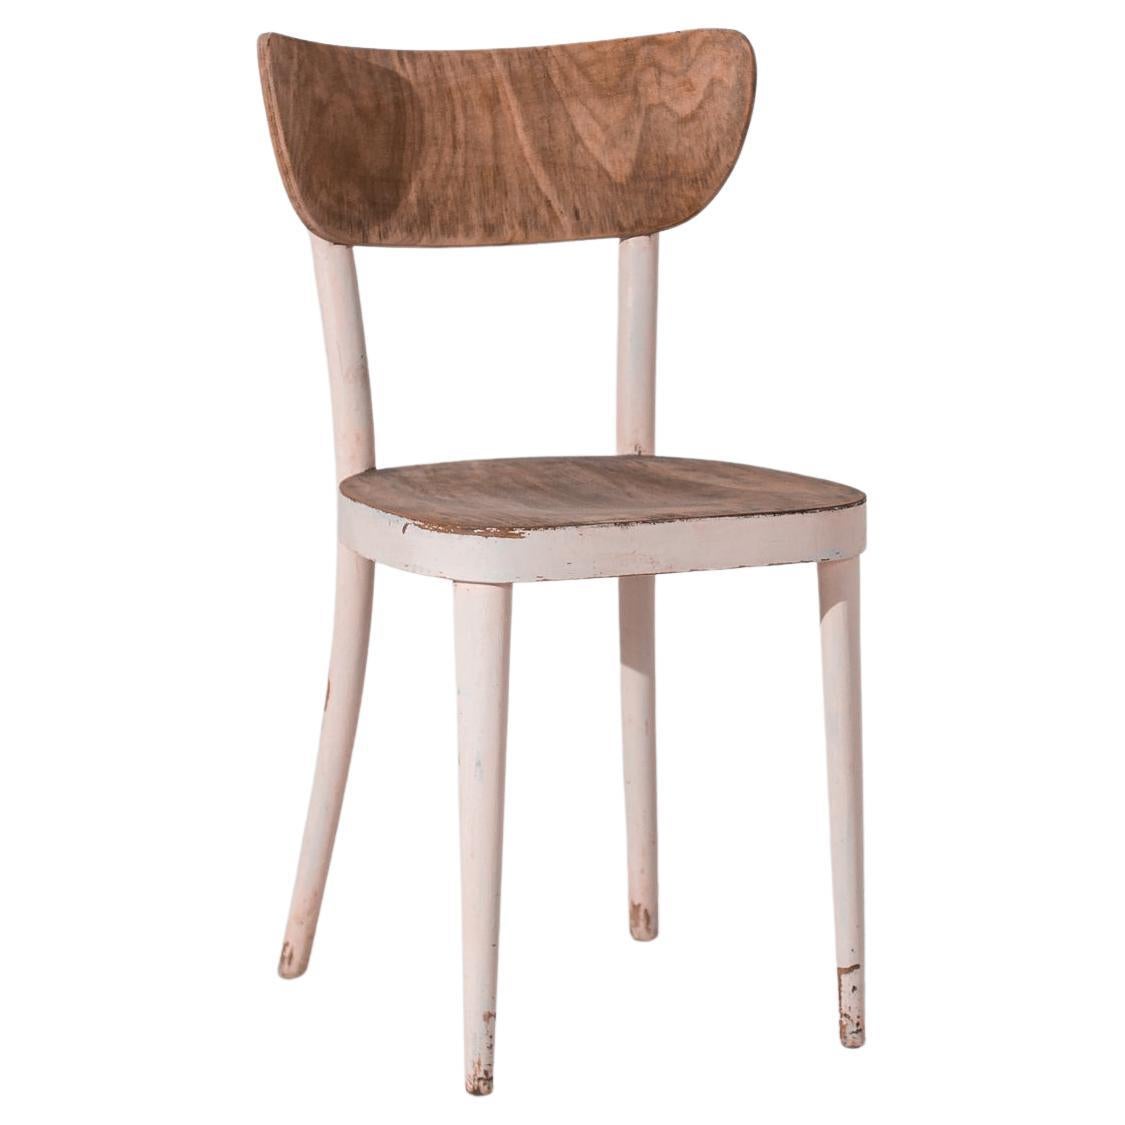 1950s Czech Wooden Chair